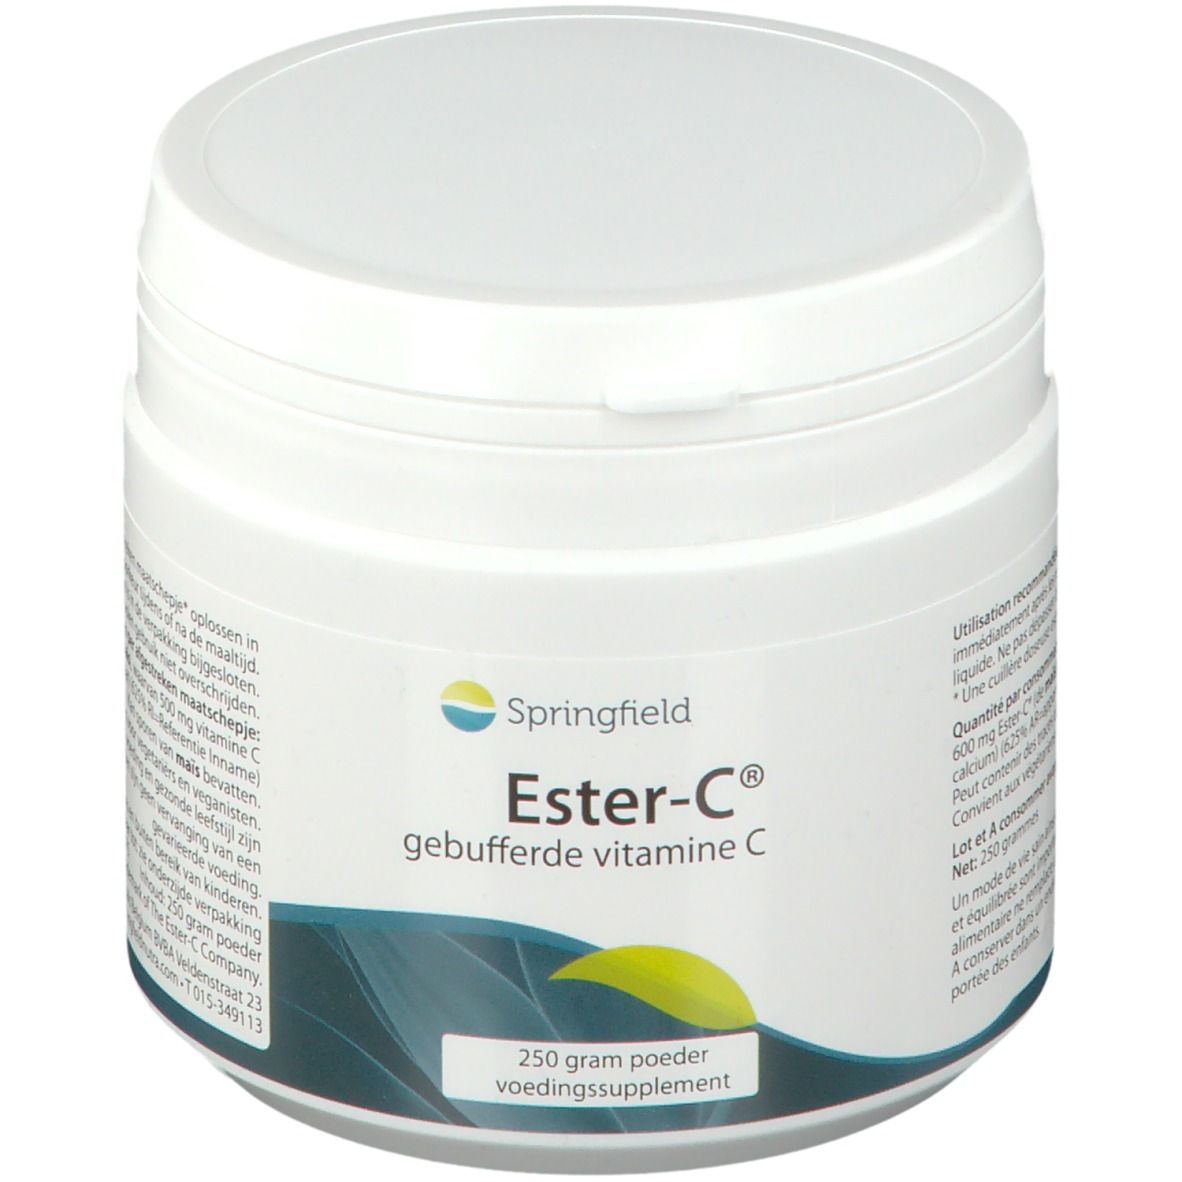 SPRINGFIELD NUTRACEUTICALS Ester-C® Vitamin C